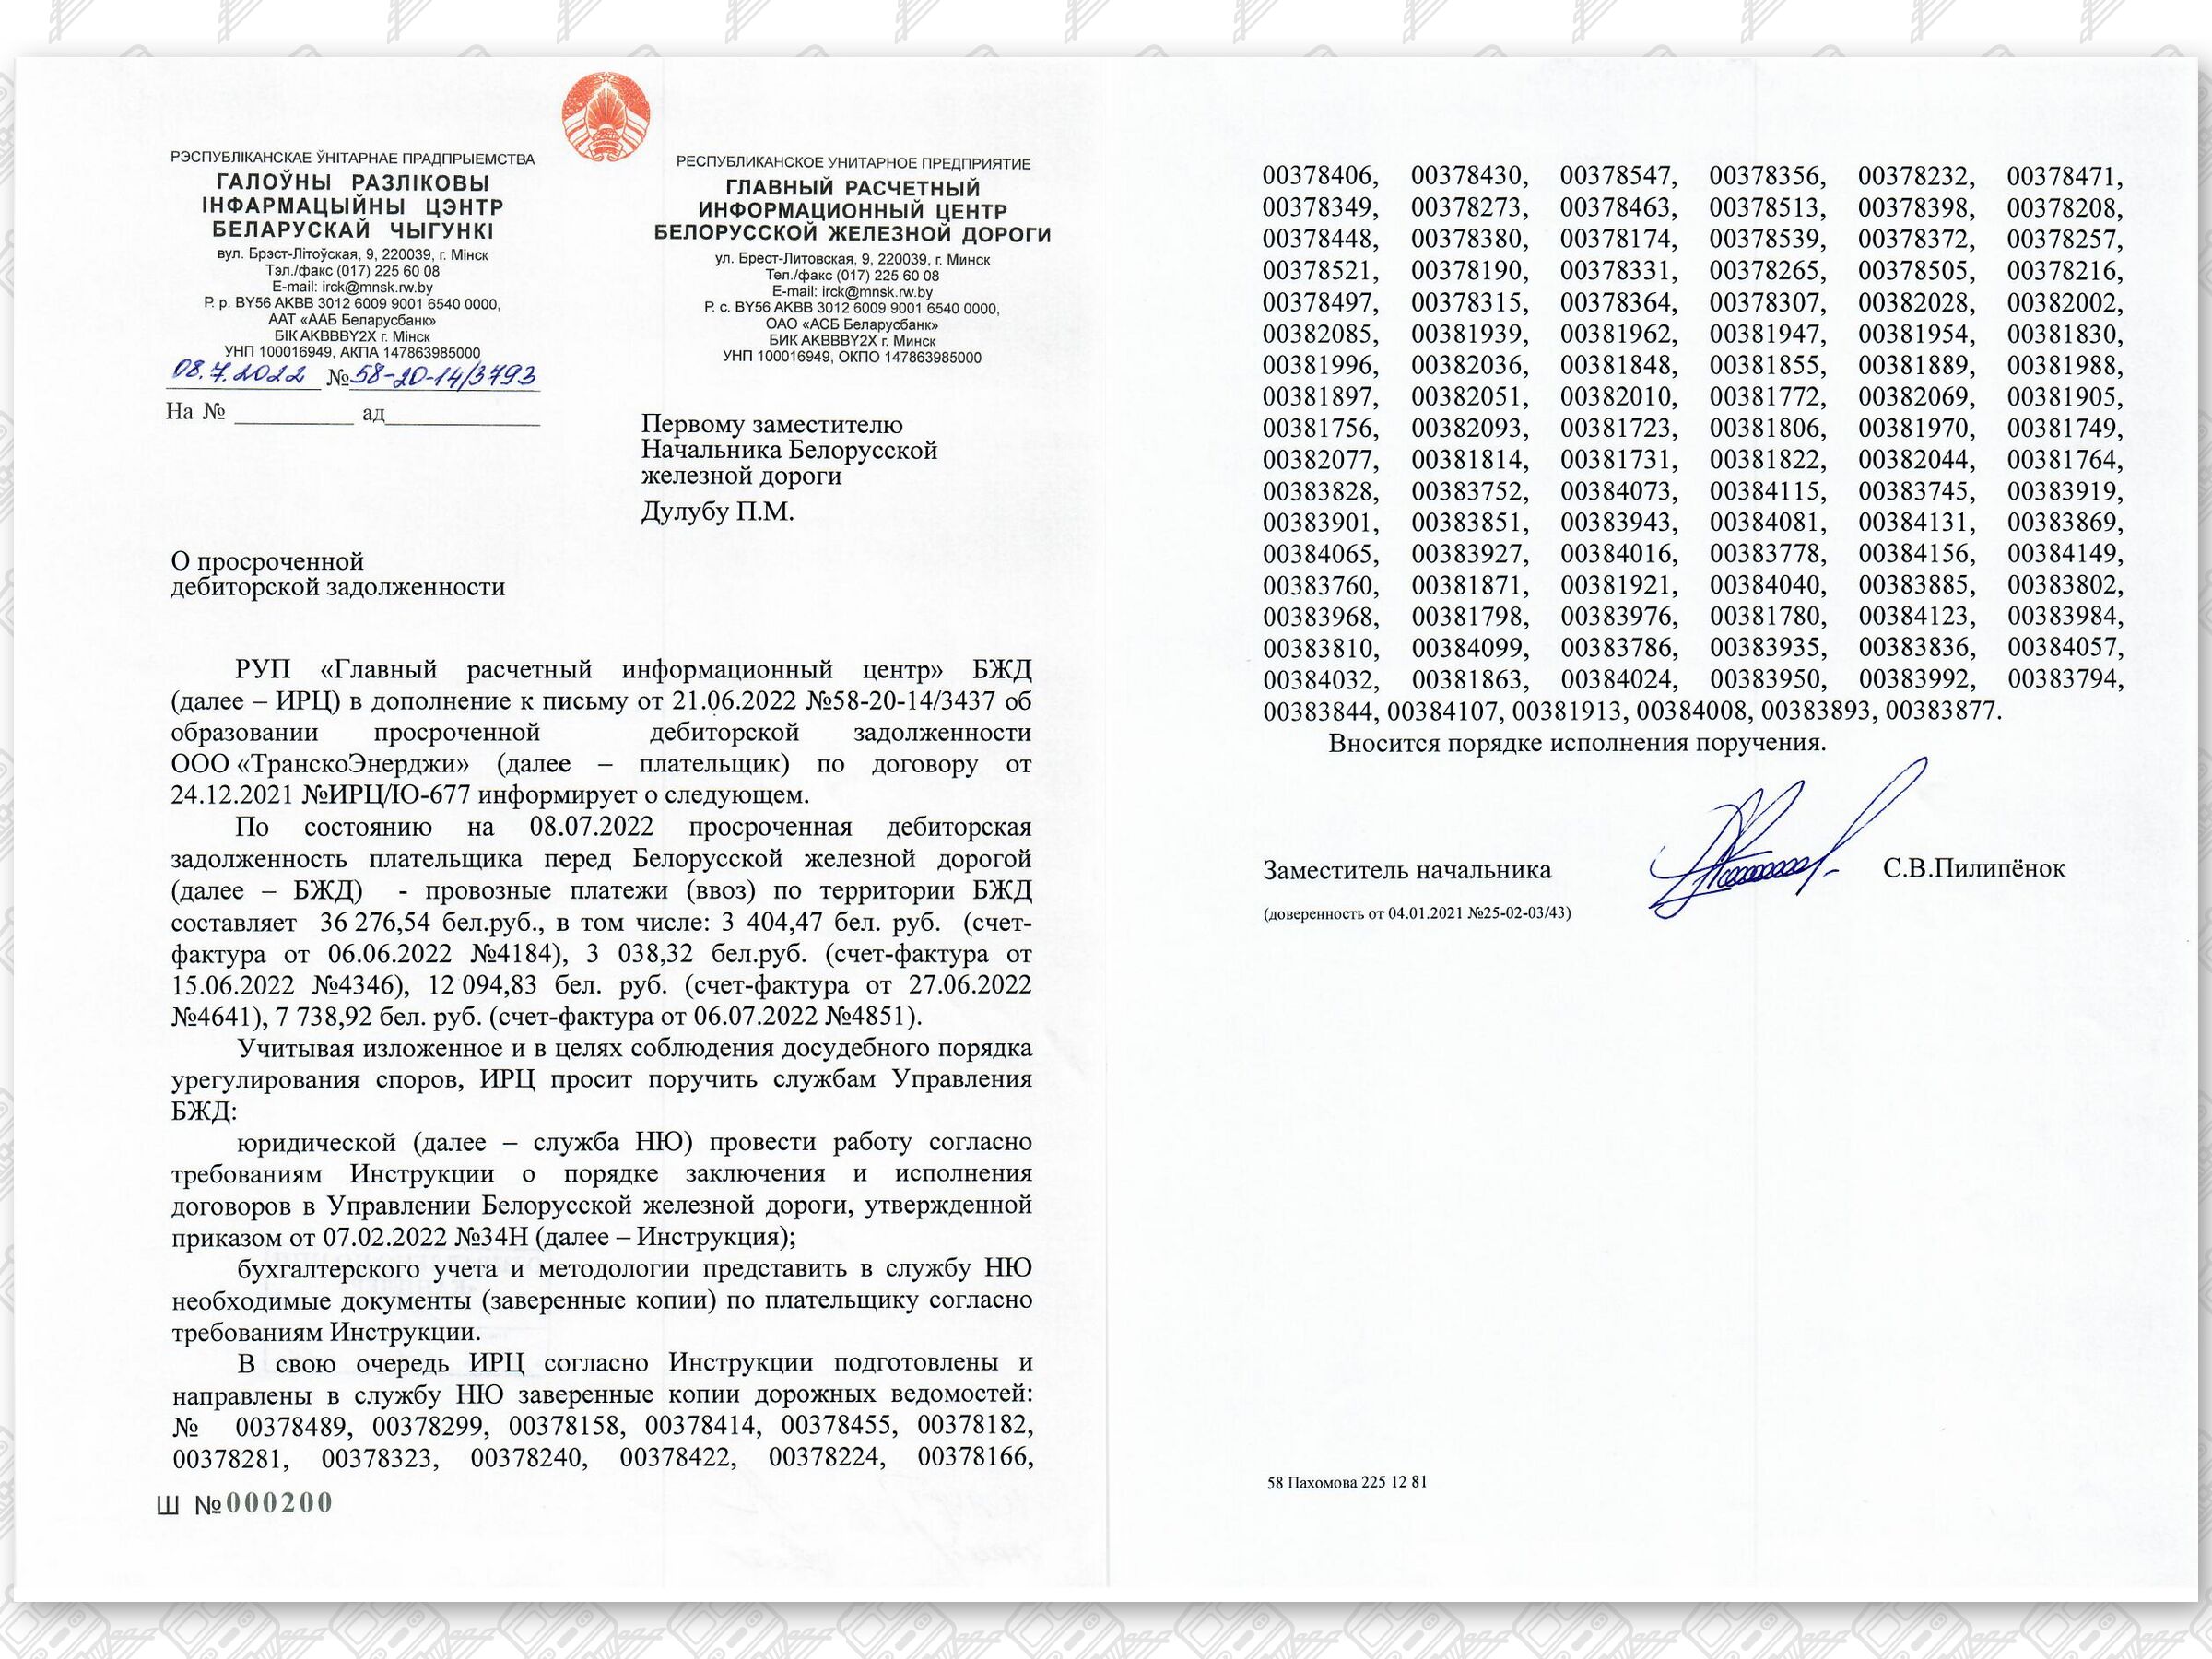 2 - Документы, касающиеся неправомерного (без оплаты) оказания экспедиторской компании услуг ООО «ТранскоЭнерджи»